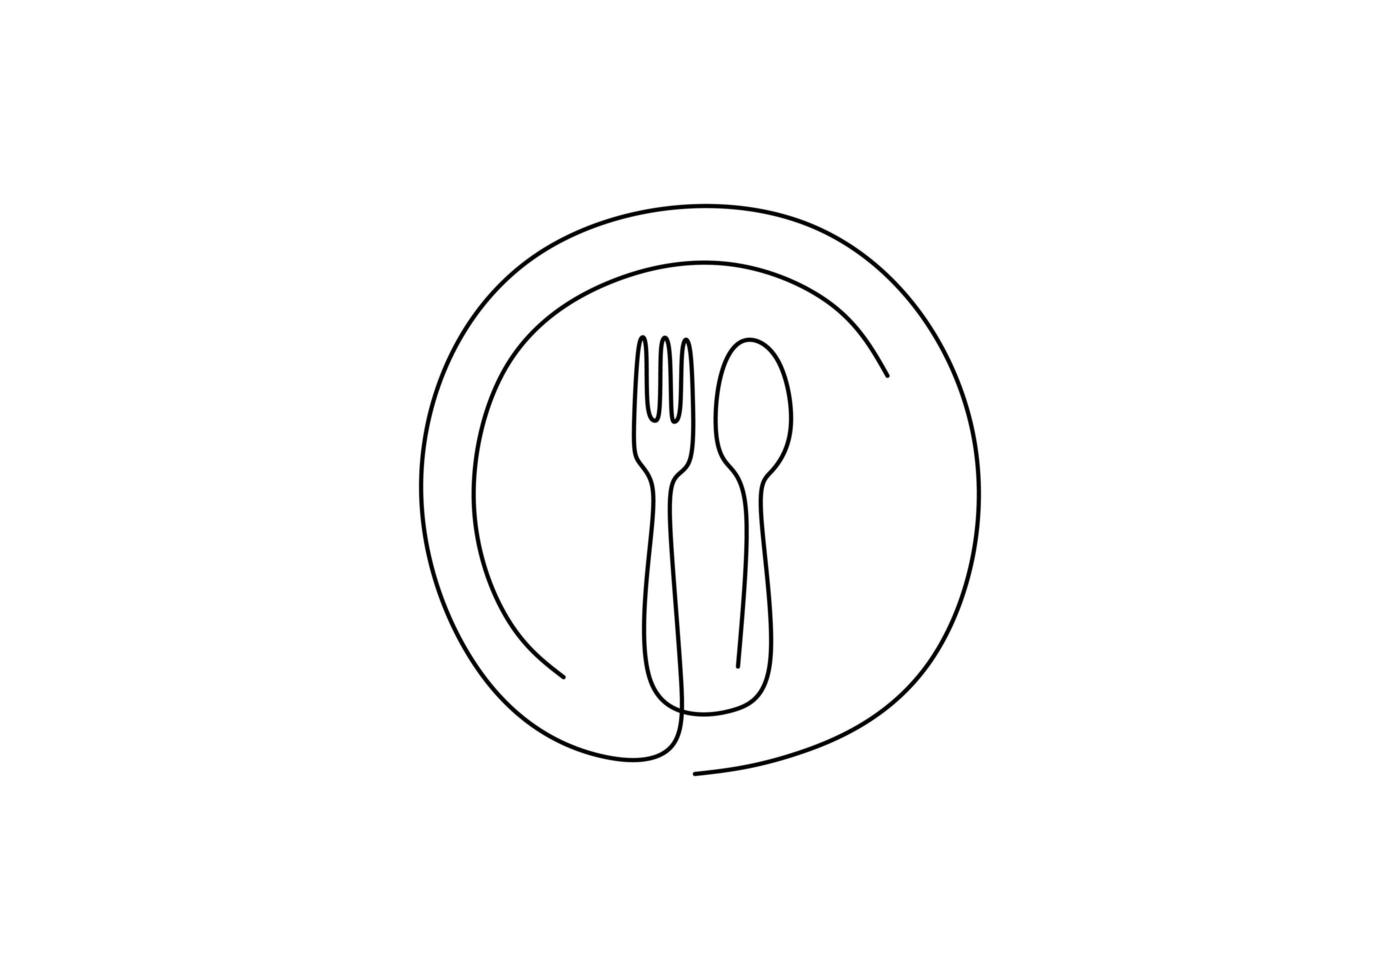 dibujo de línea continua del símbolo de comida. signo de plato, cuchillo y tenedor. minimalismo dibujado a mano una línea de arte minimalista ilustración vectorial. tema de la cena con contorno de dibujo creativo. vector